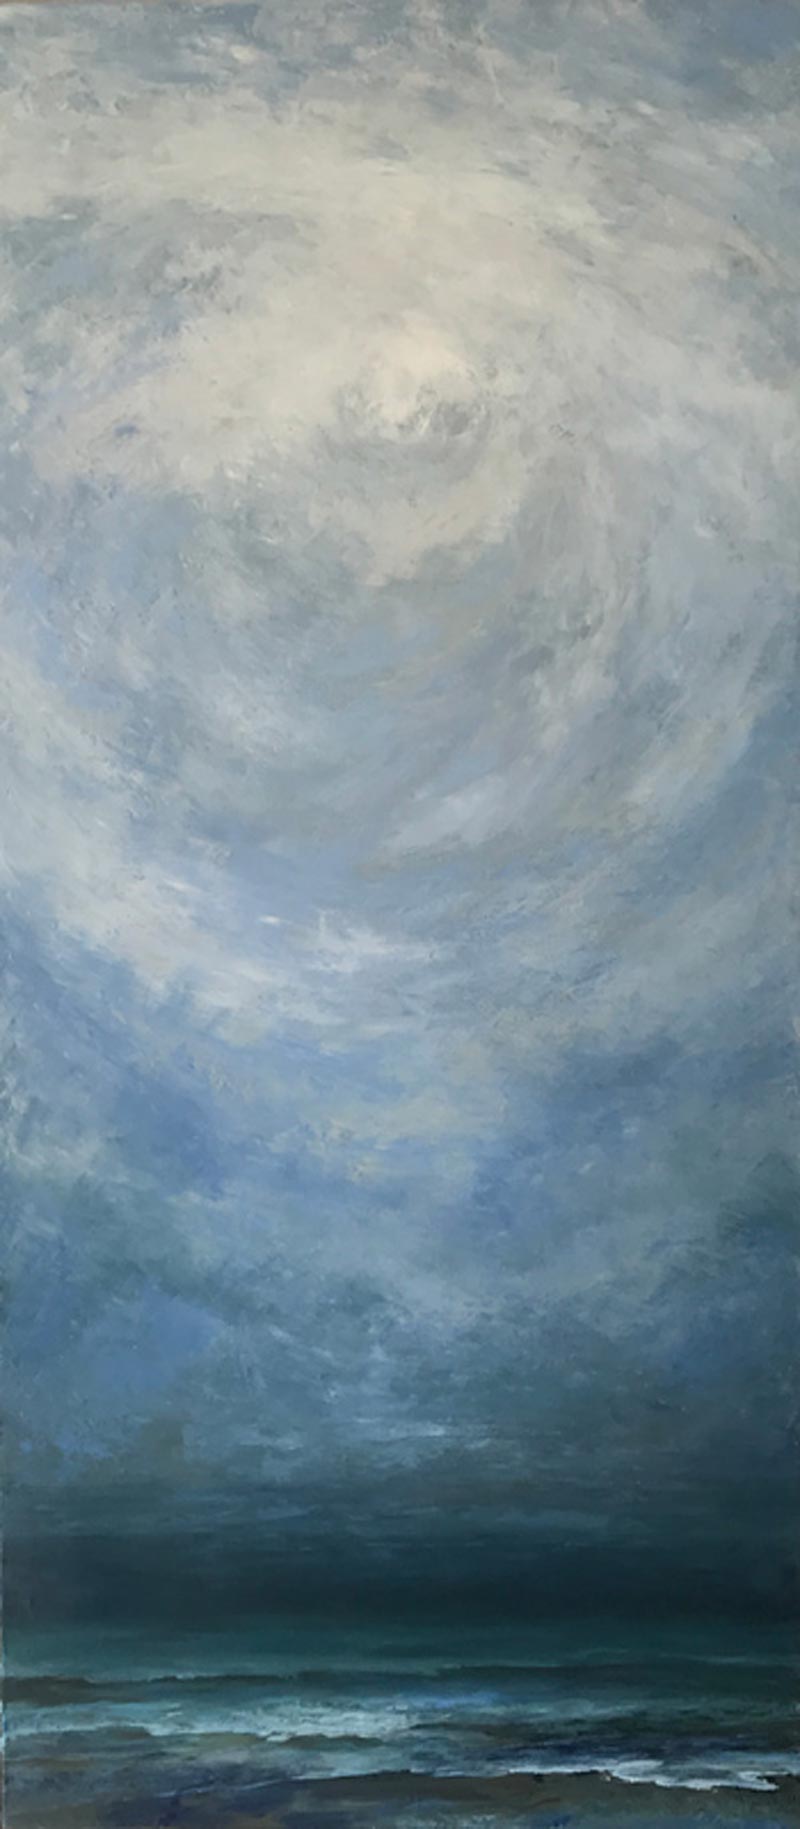 Stormy • 80 x 180 cm